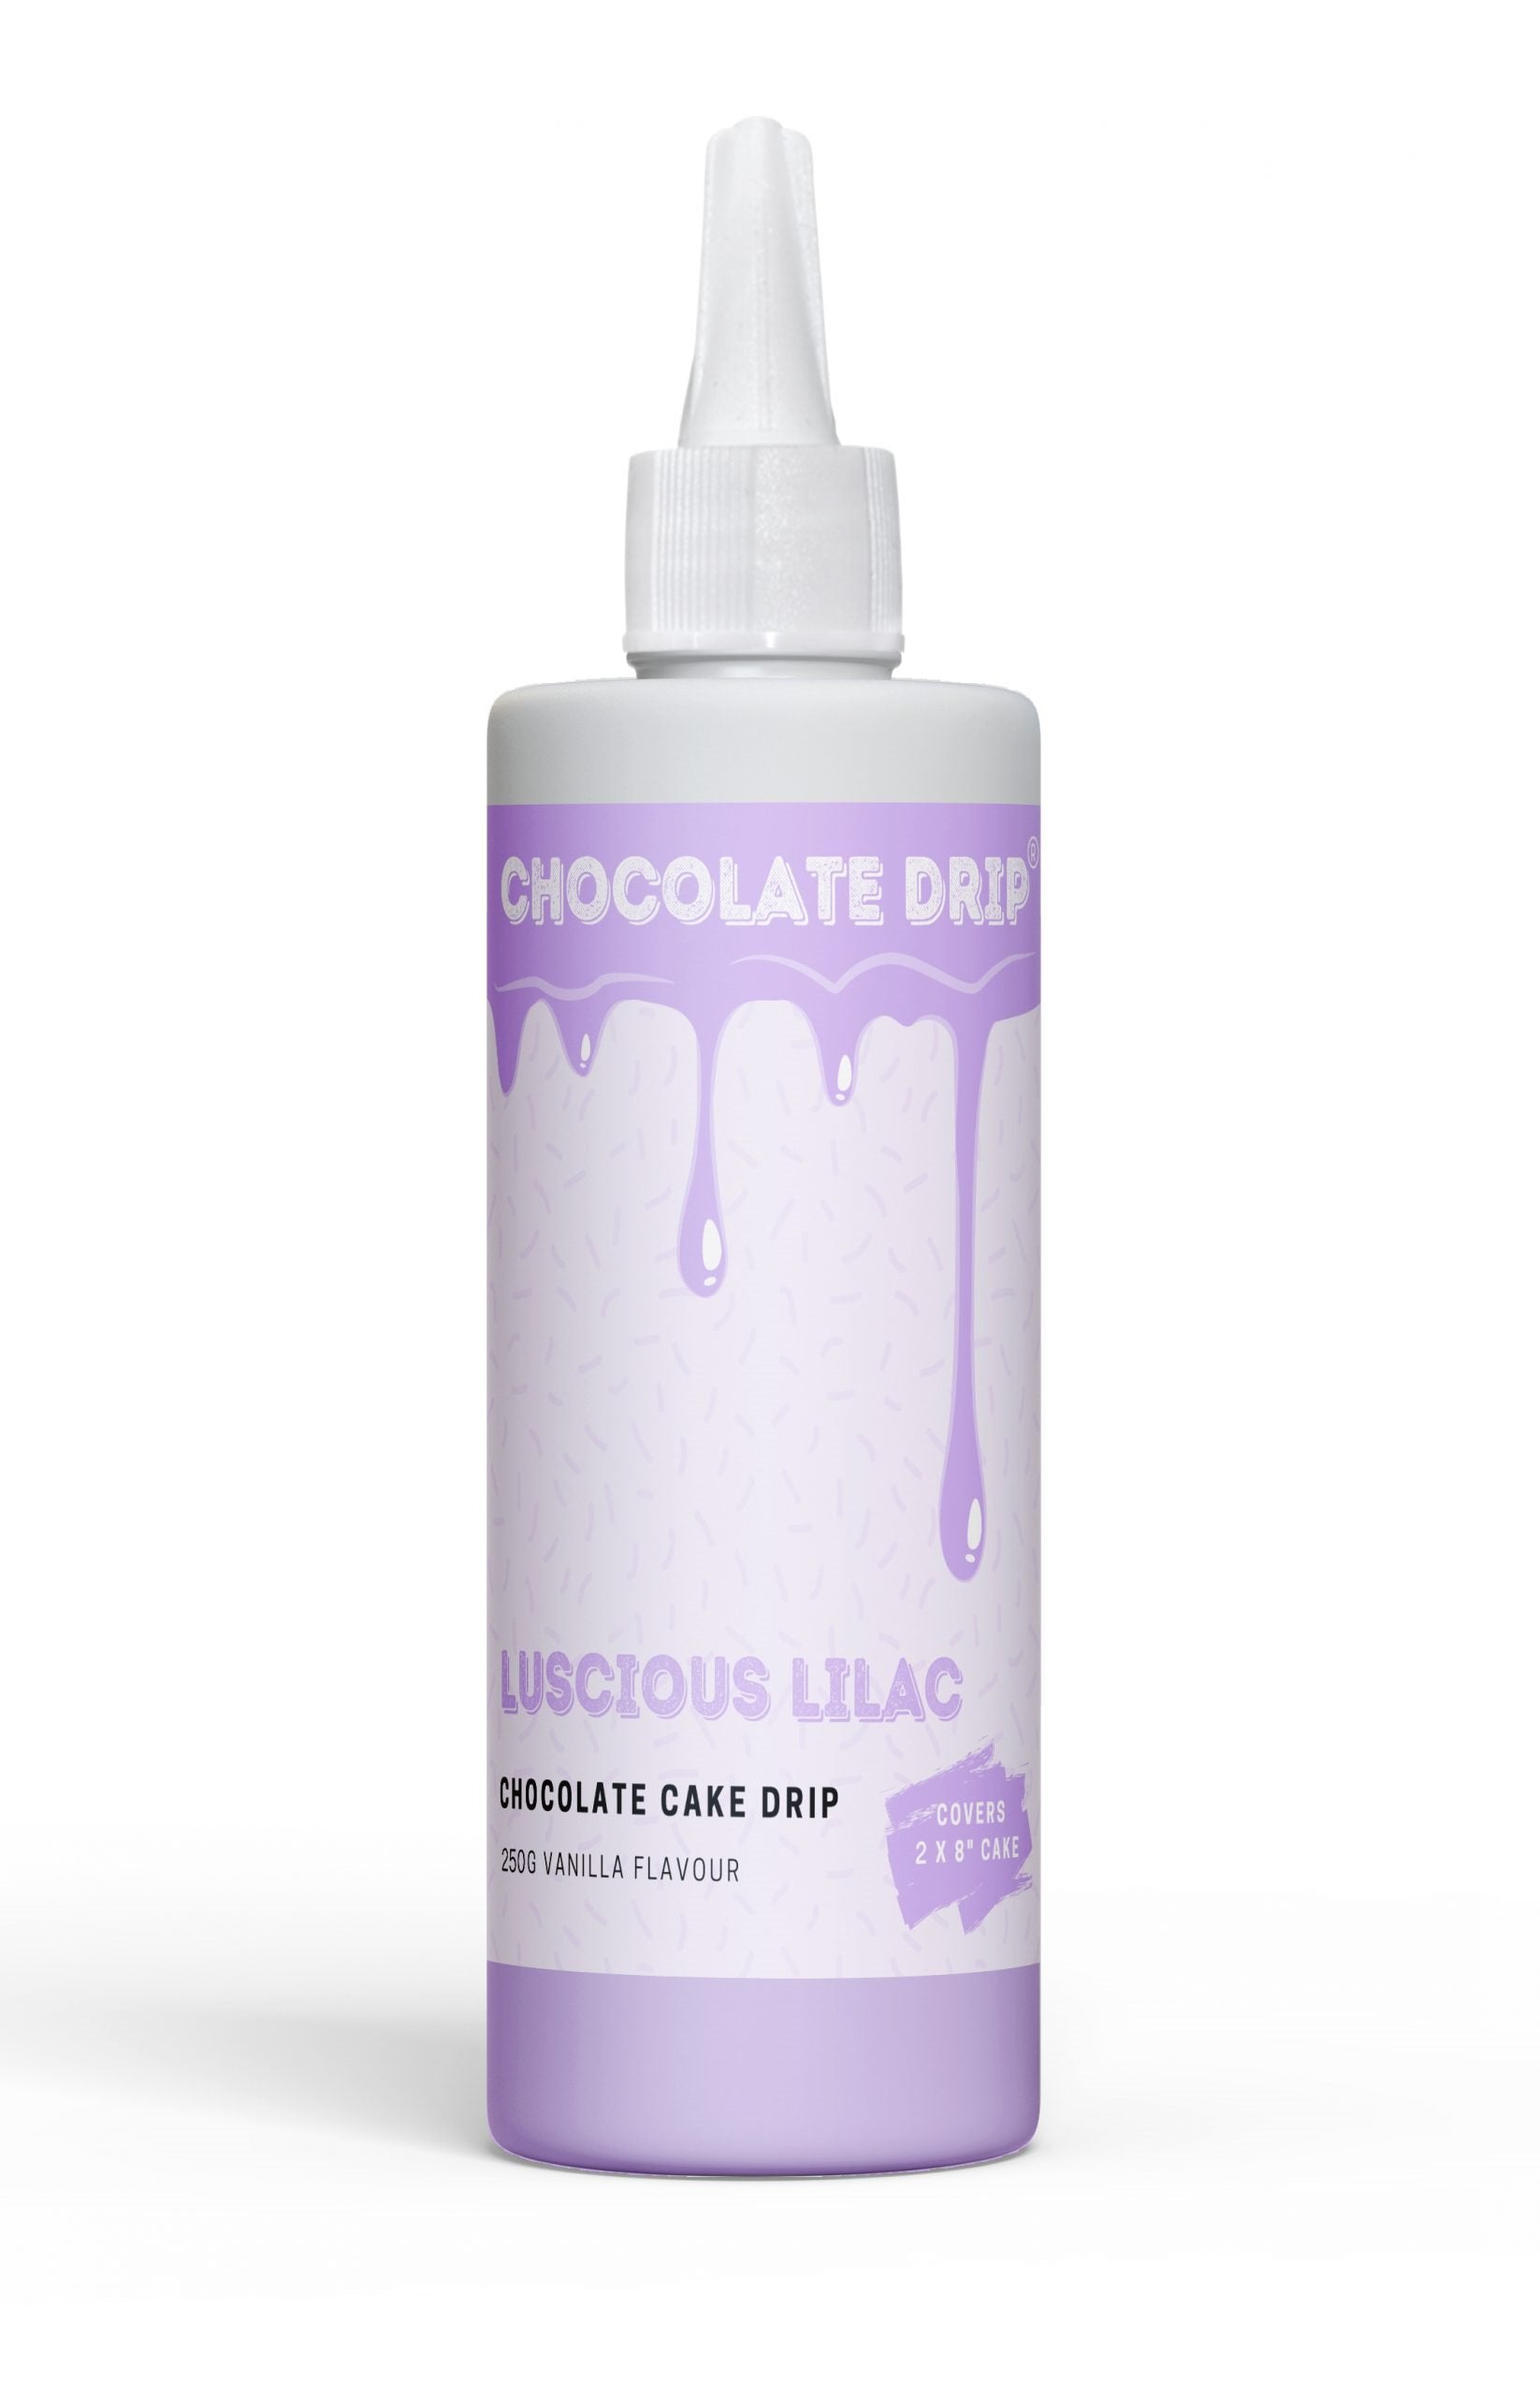 Chocolate Drip Luscious Lilac 250g